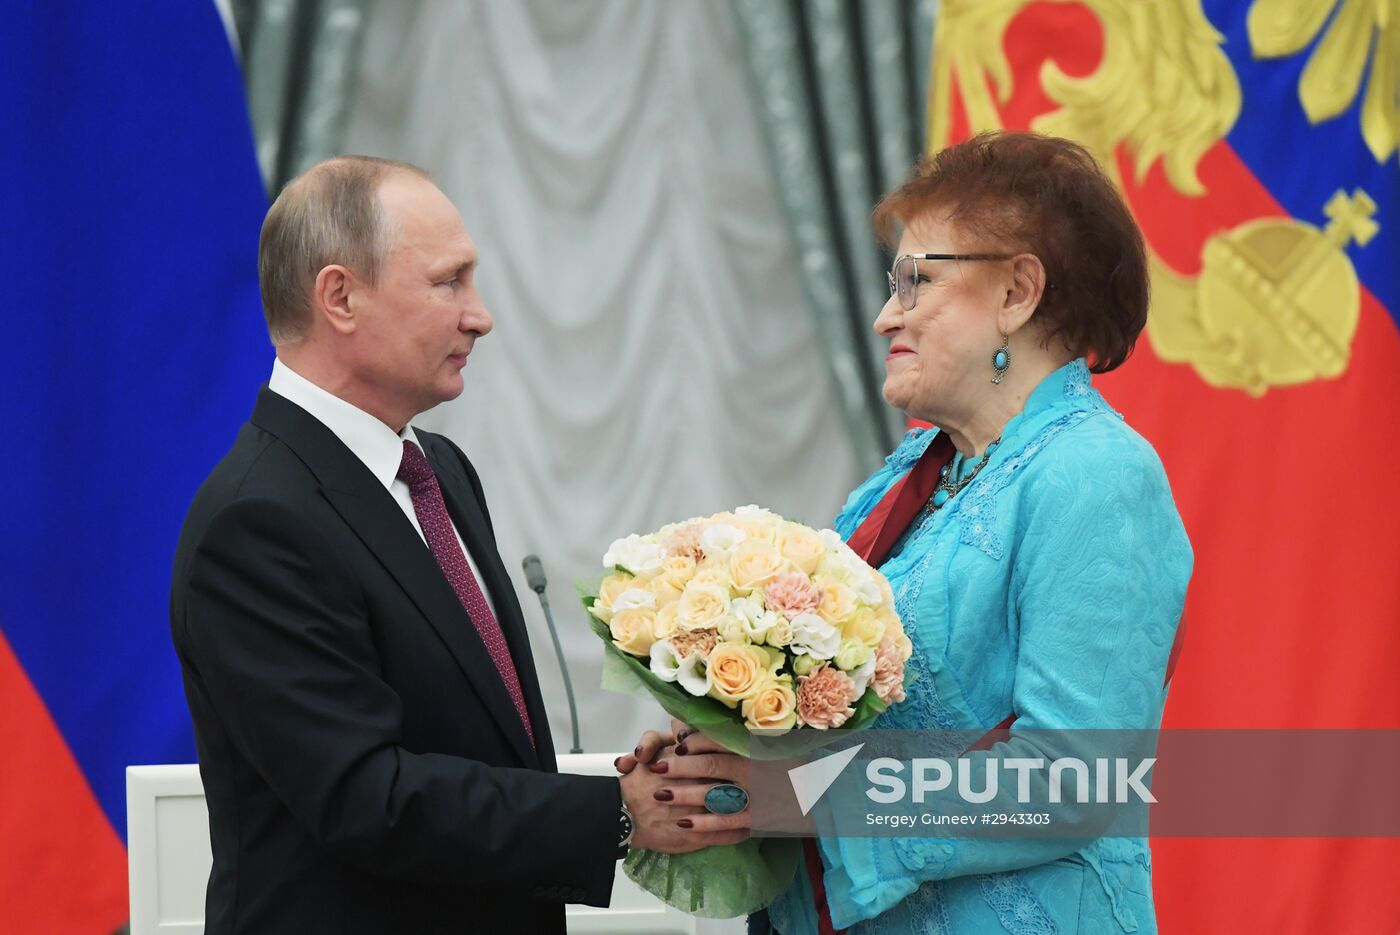 Ceremony to present state awards in Kremlin